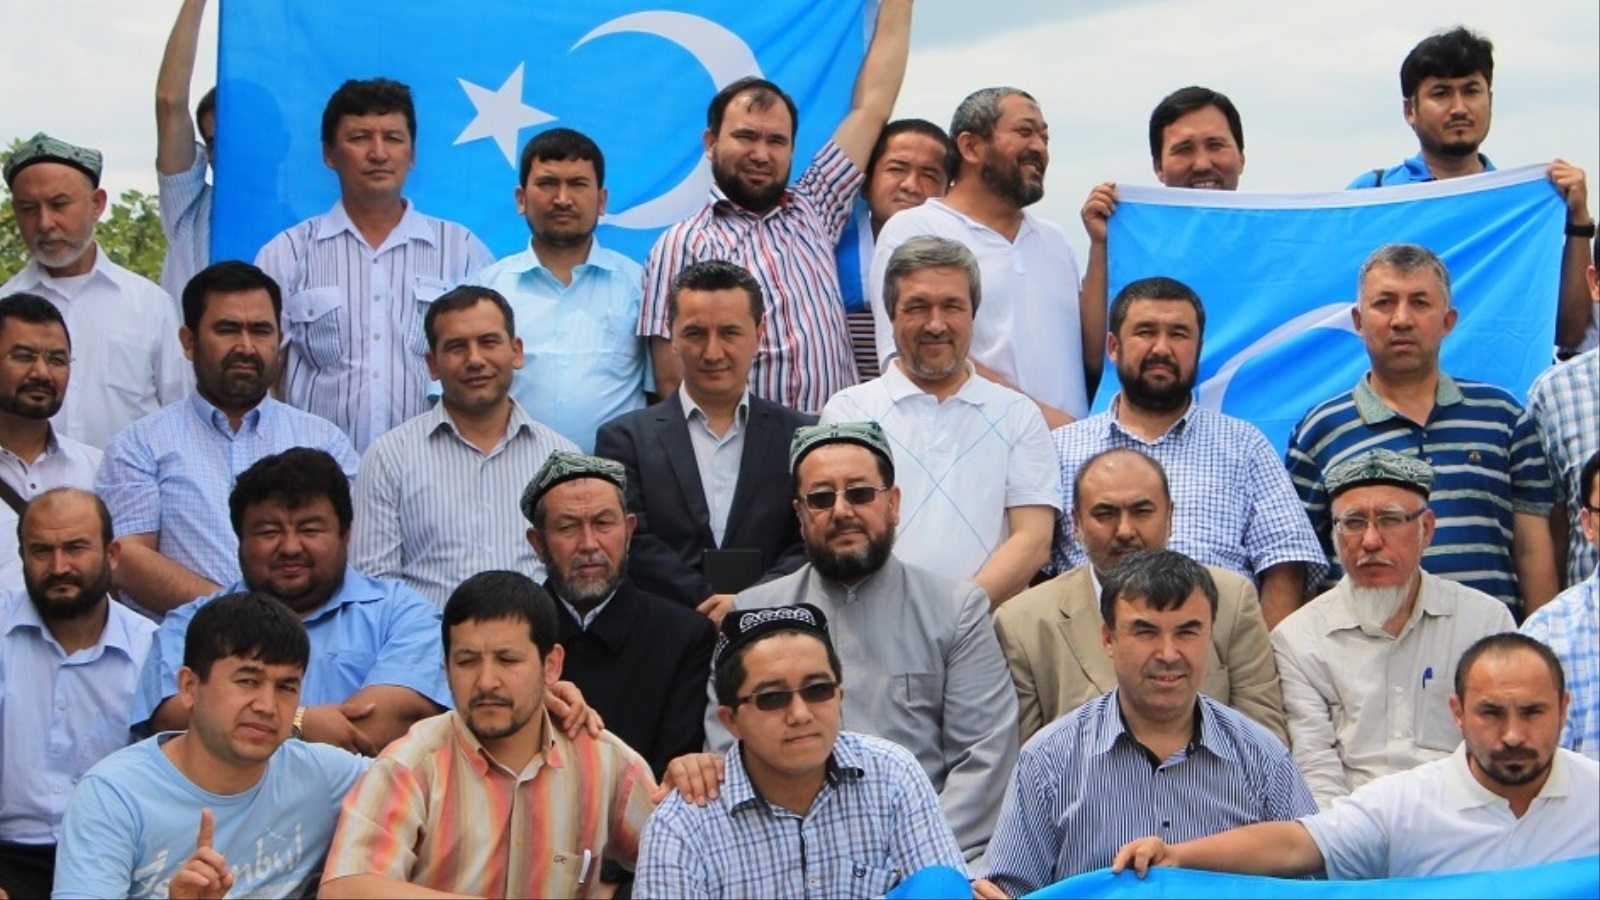 ‪الشباب الإيغوري في أحد تجمعاتهم في تركيا‬ (الجزيرة)